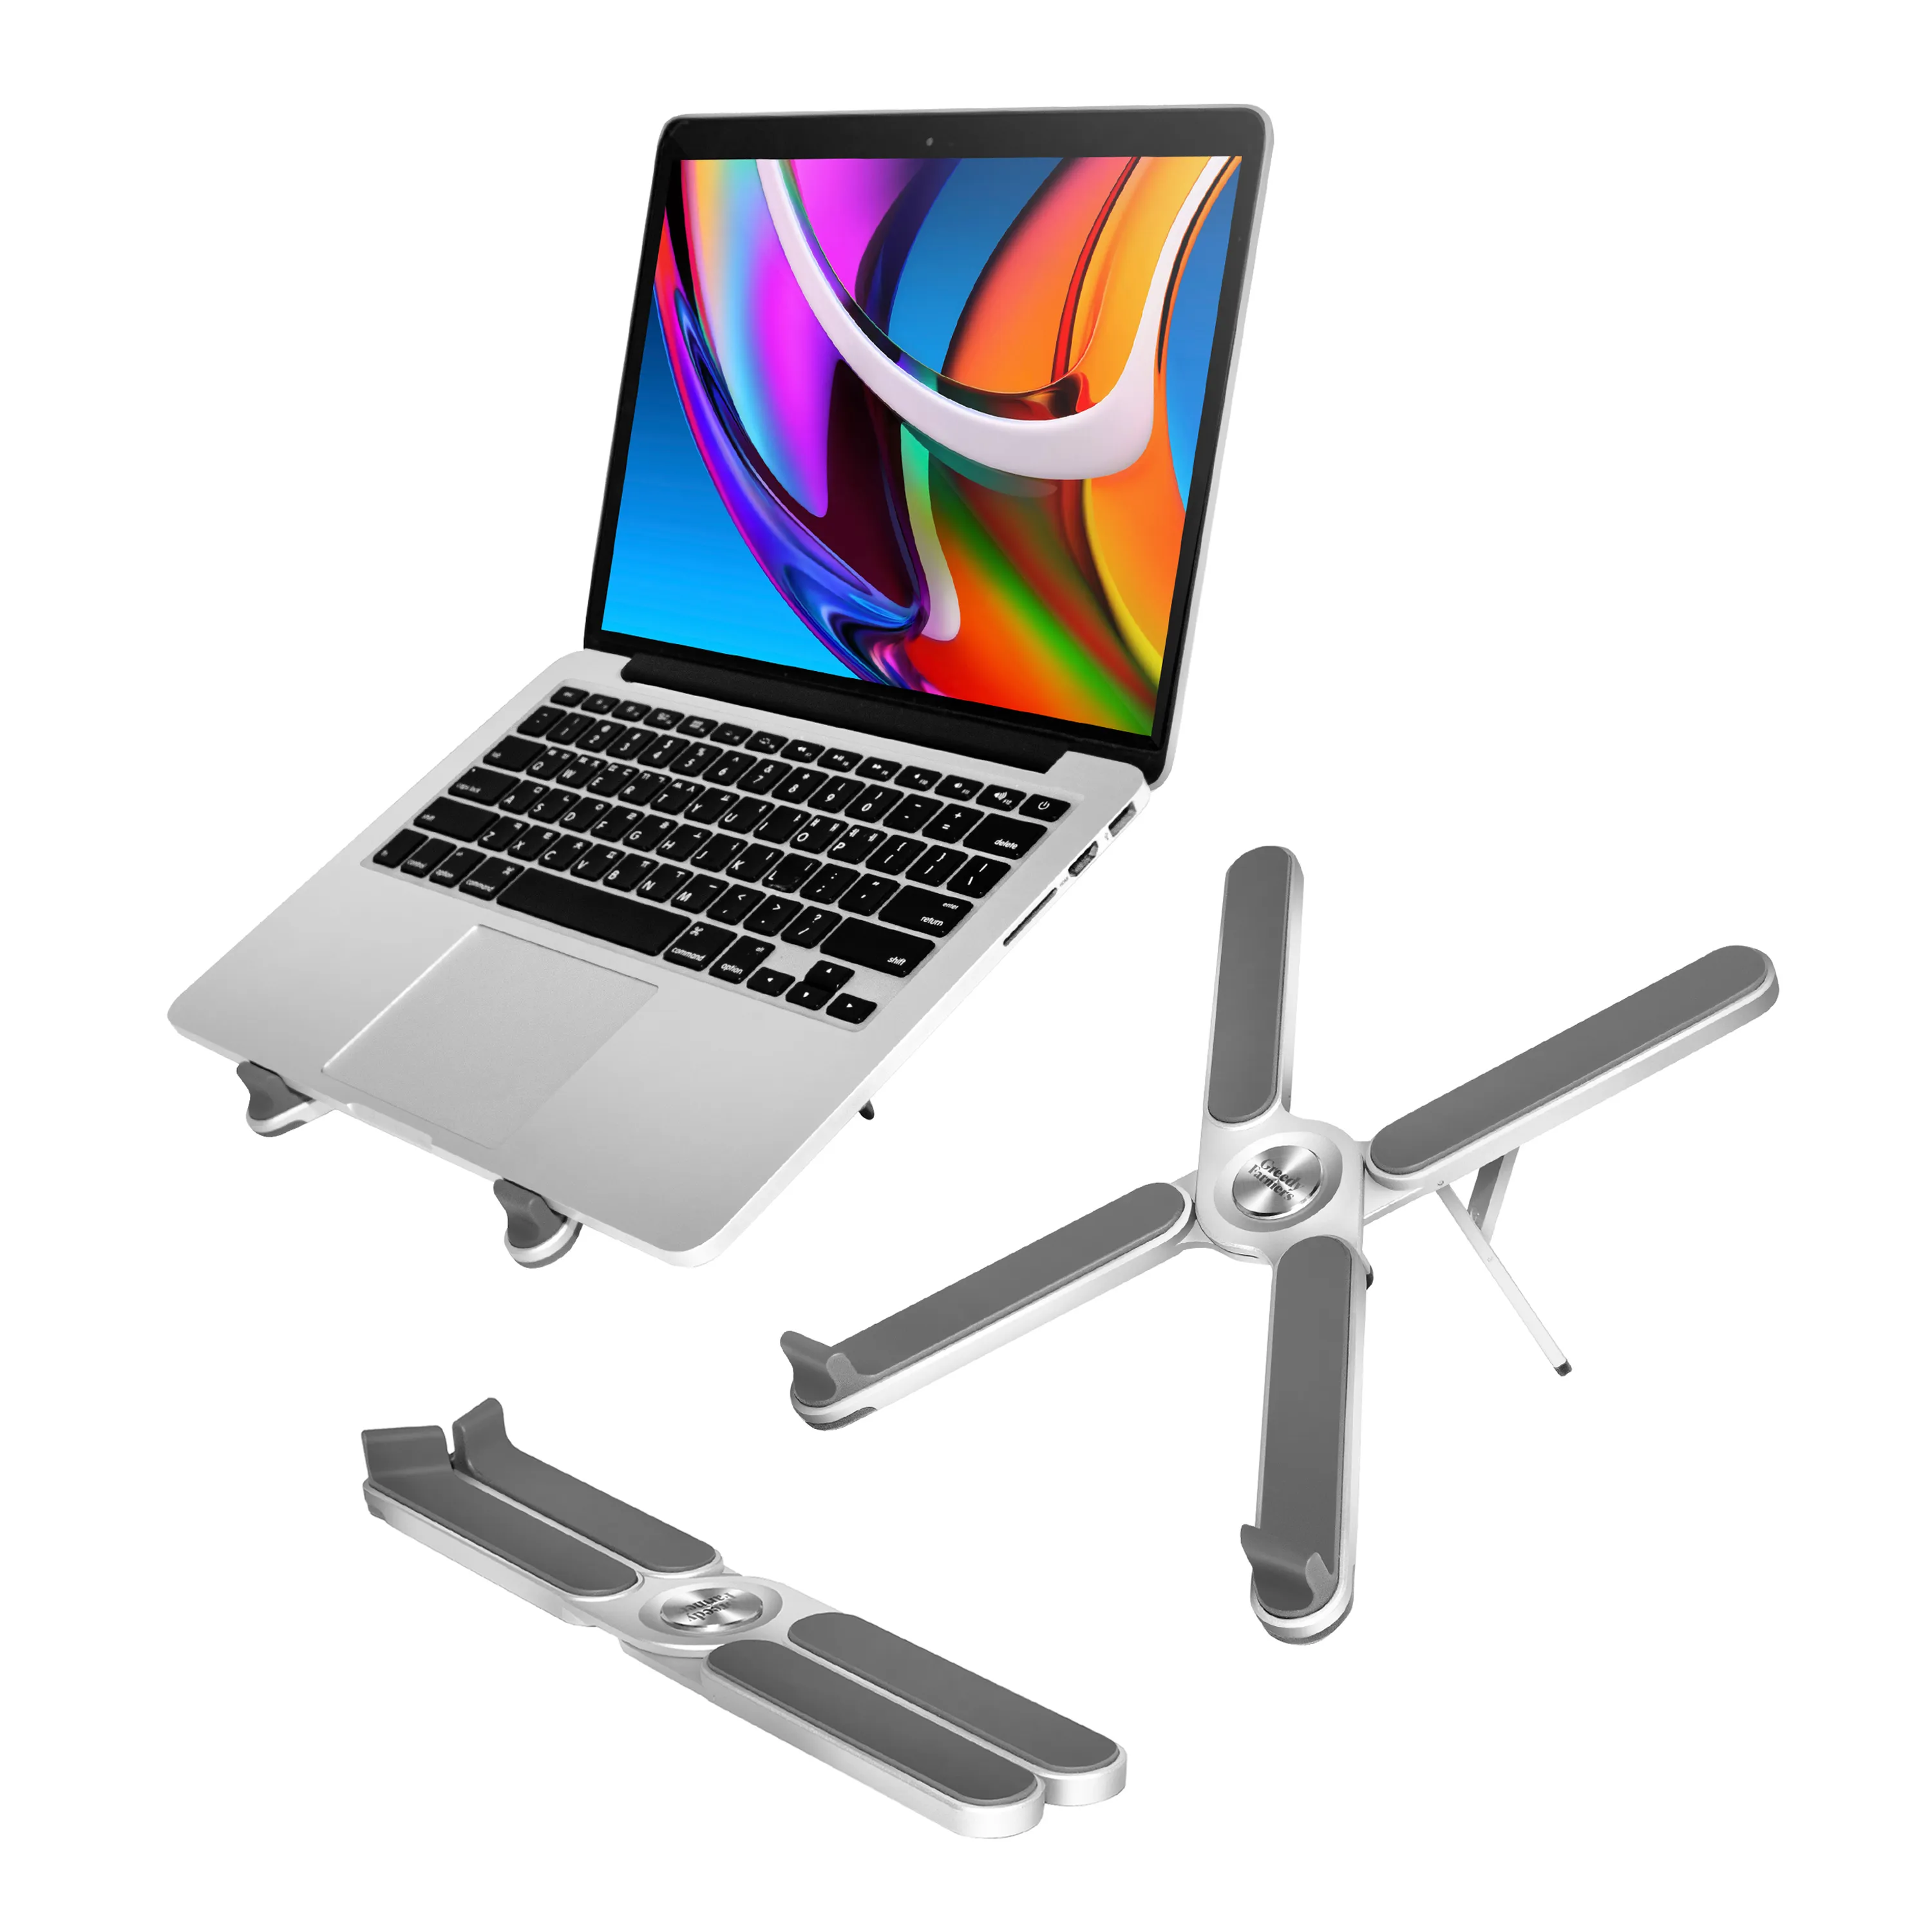 Fabrikgroßhandel Computer-Aluminiumlegierung-Laptop-Ständer geeignet für 11-17 Zoll Tablets und Laptops